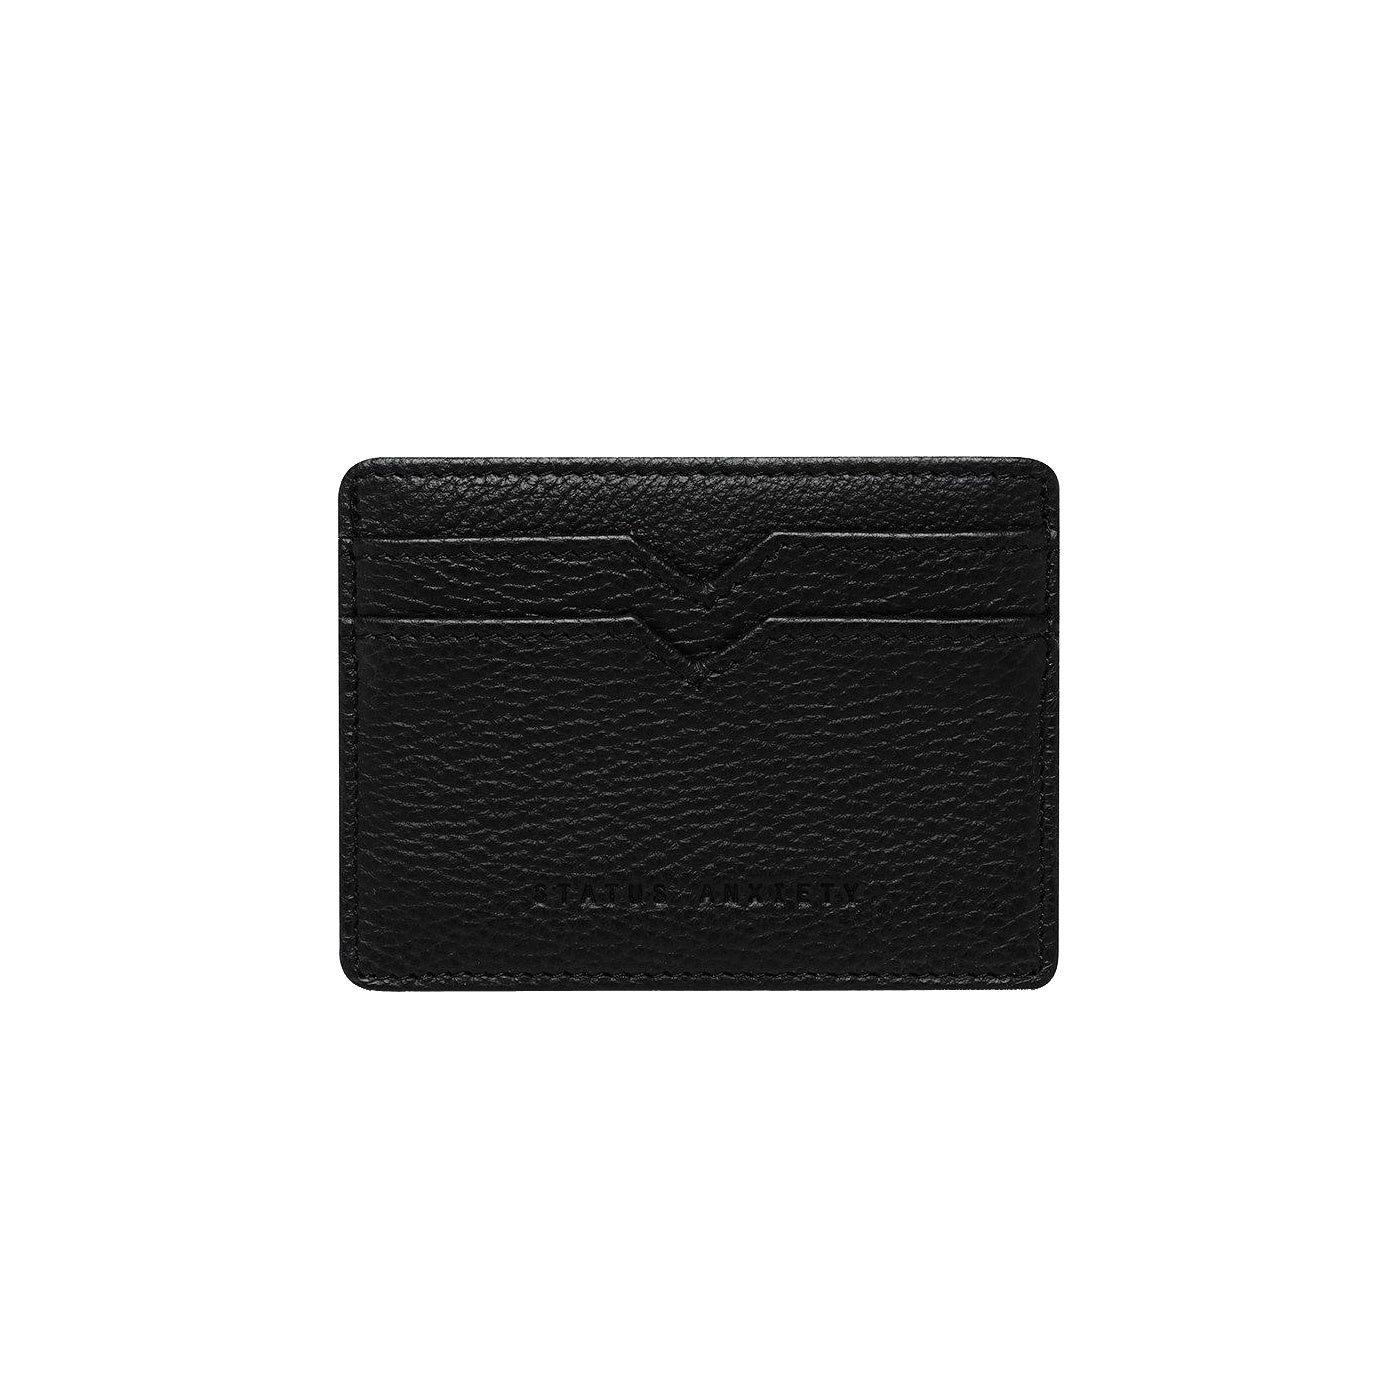 Leather card holder black